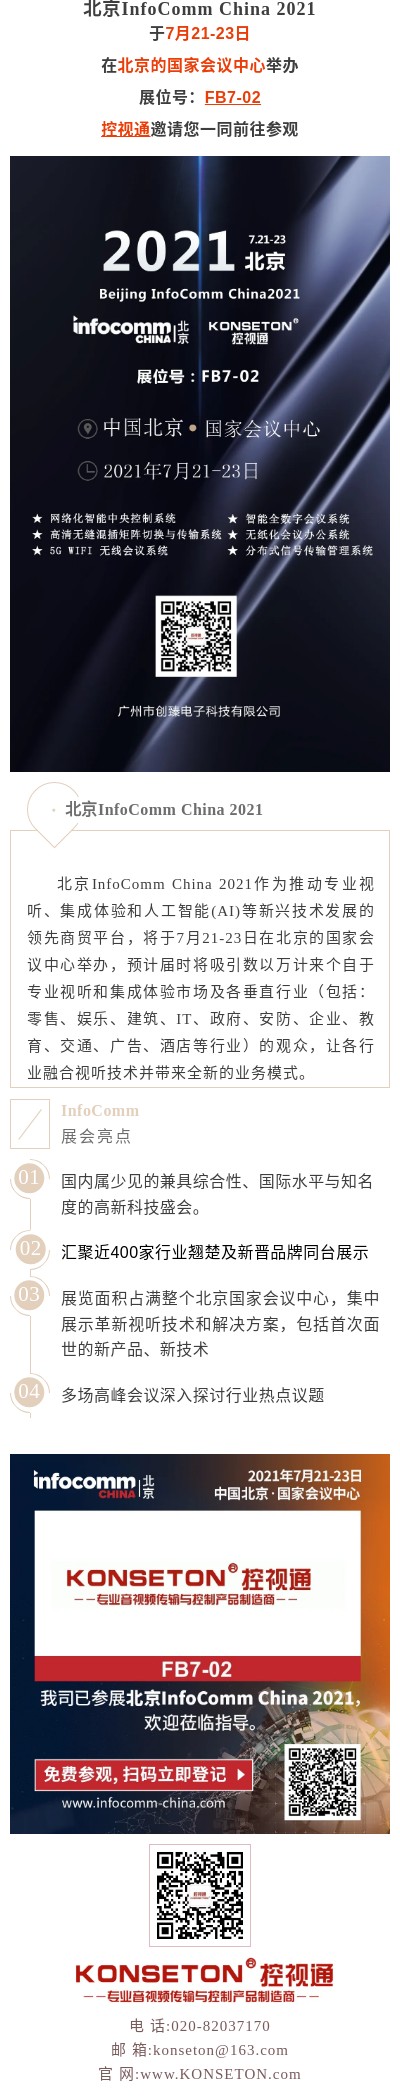 【控视通】邀您参加北京InfoComm China 2021